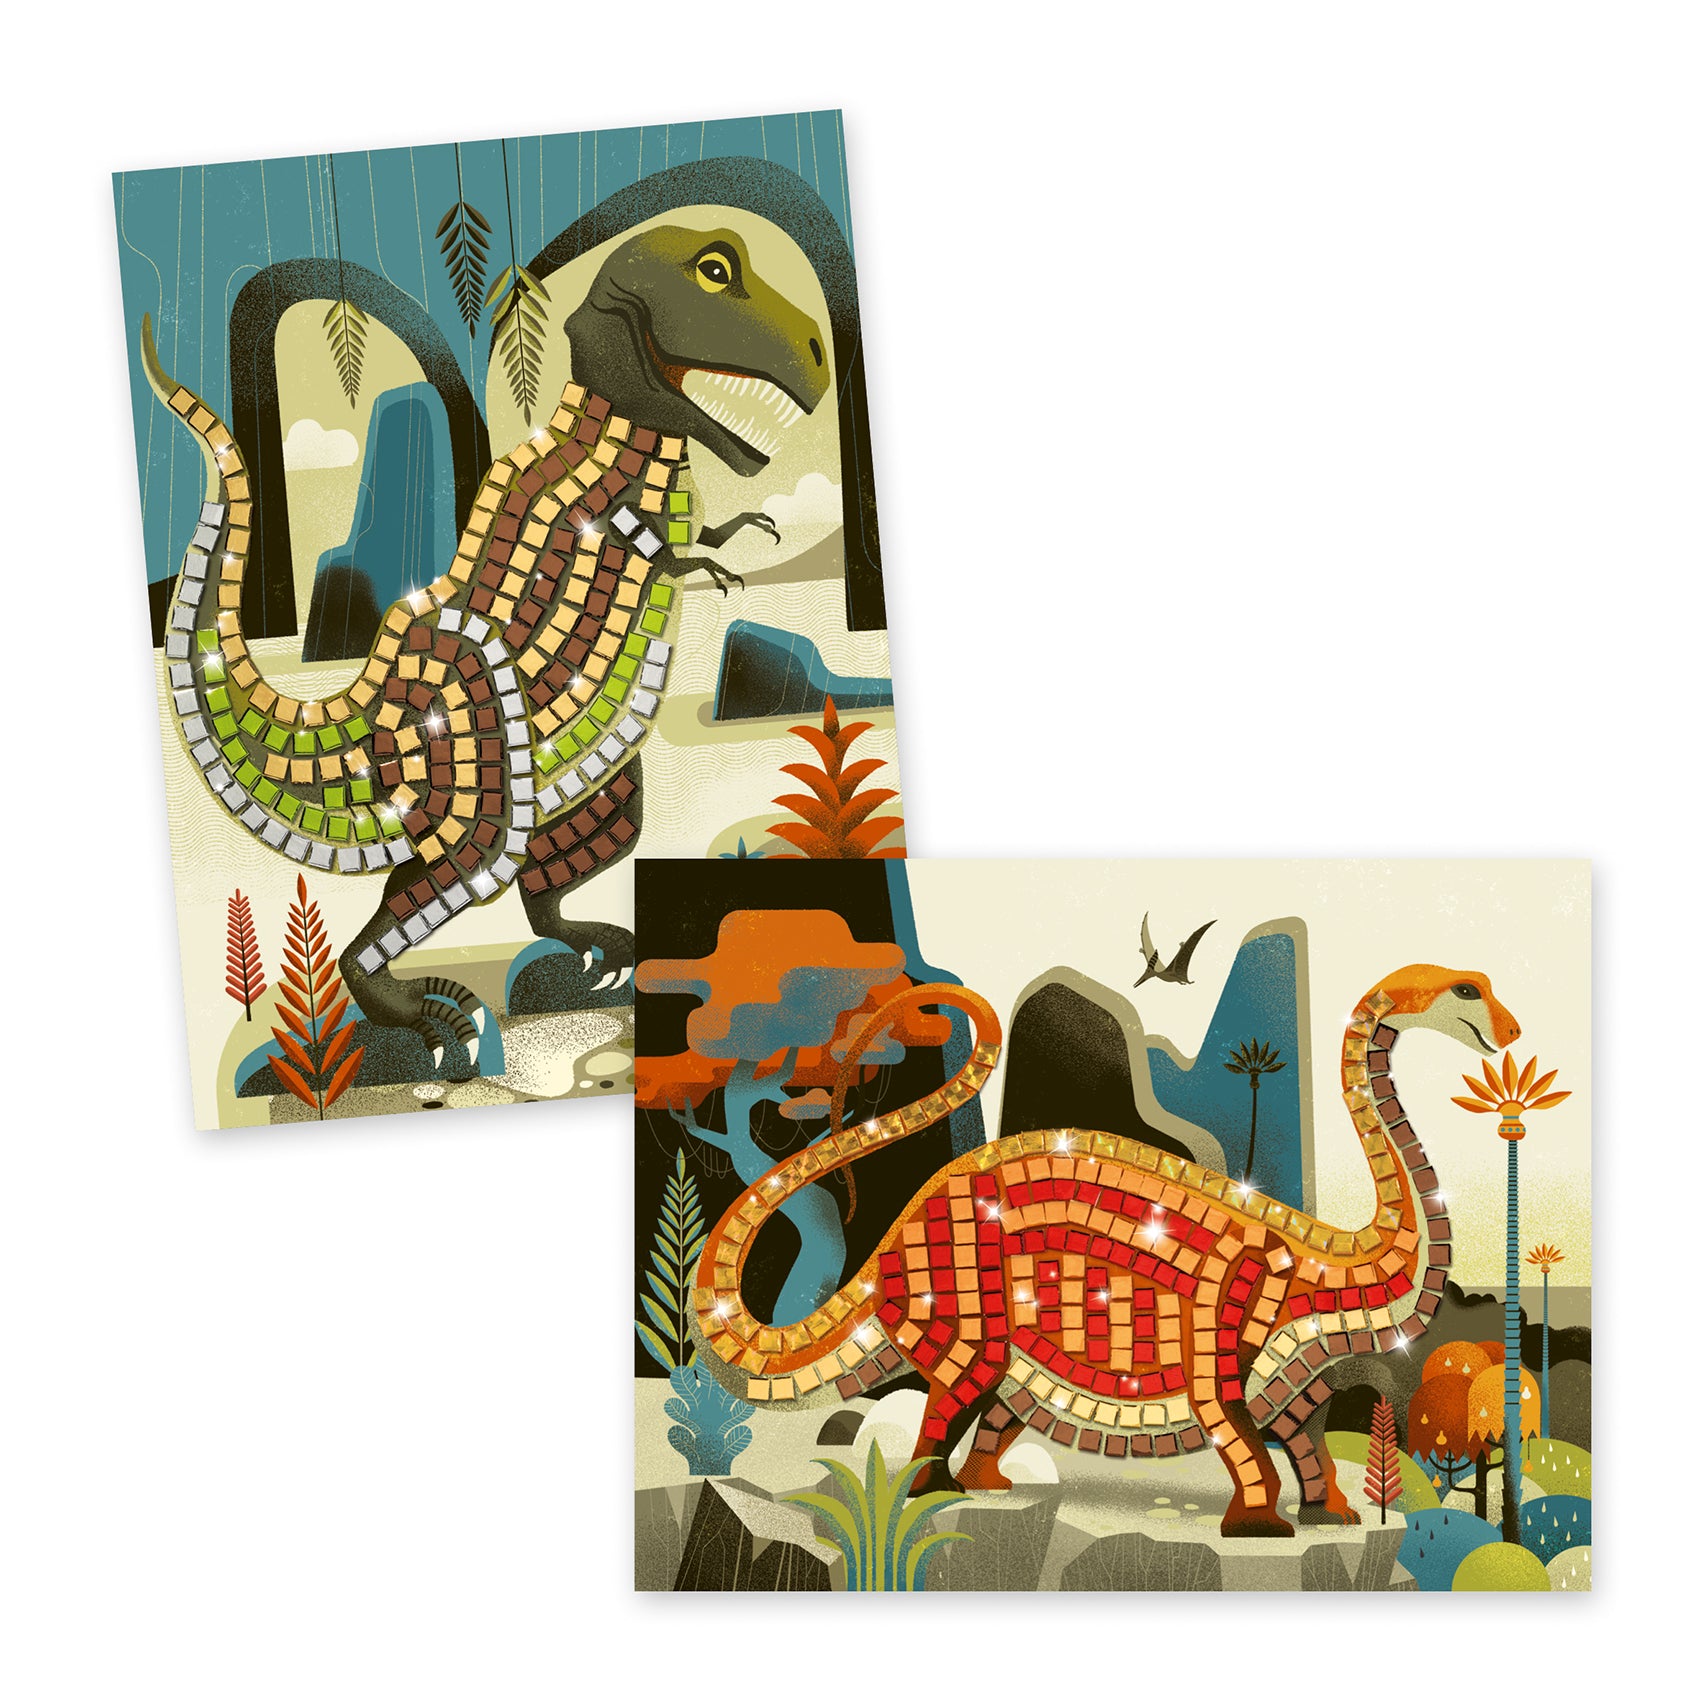 Djeco Mosaics – Dinosaurs